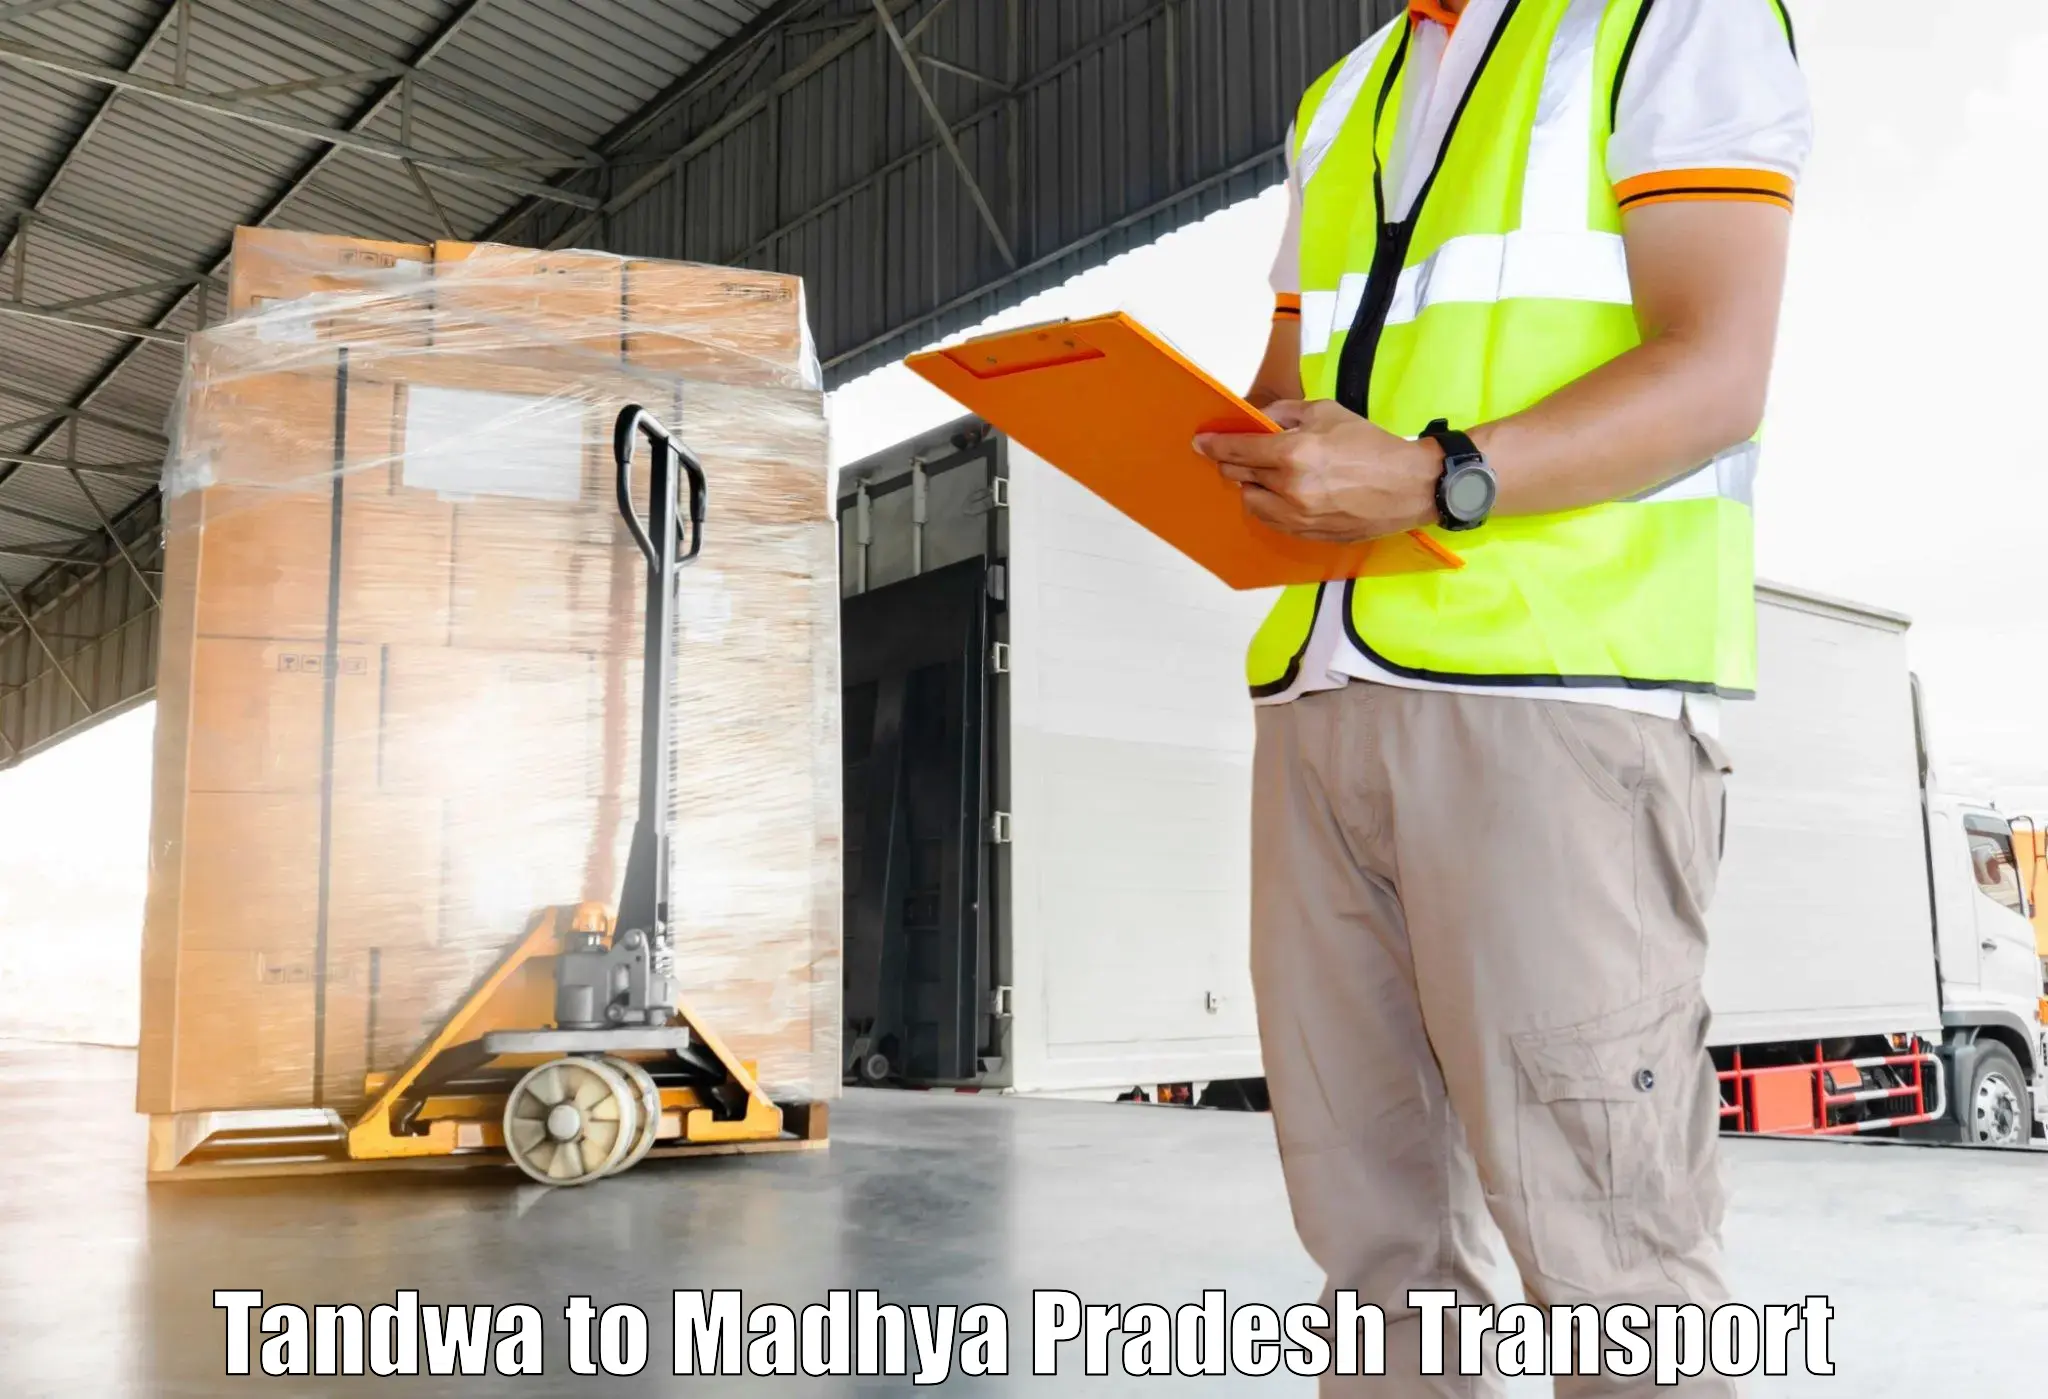 Pick up transport service Tandwa to Chhindwara